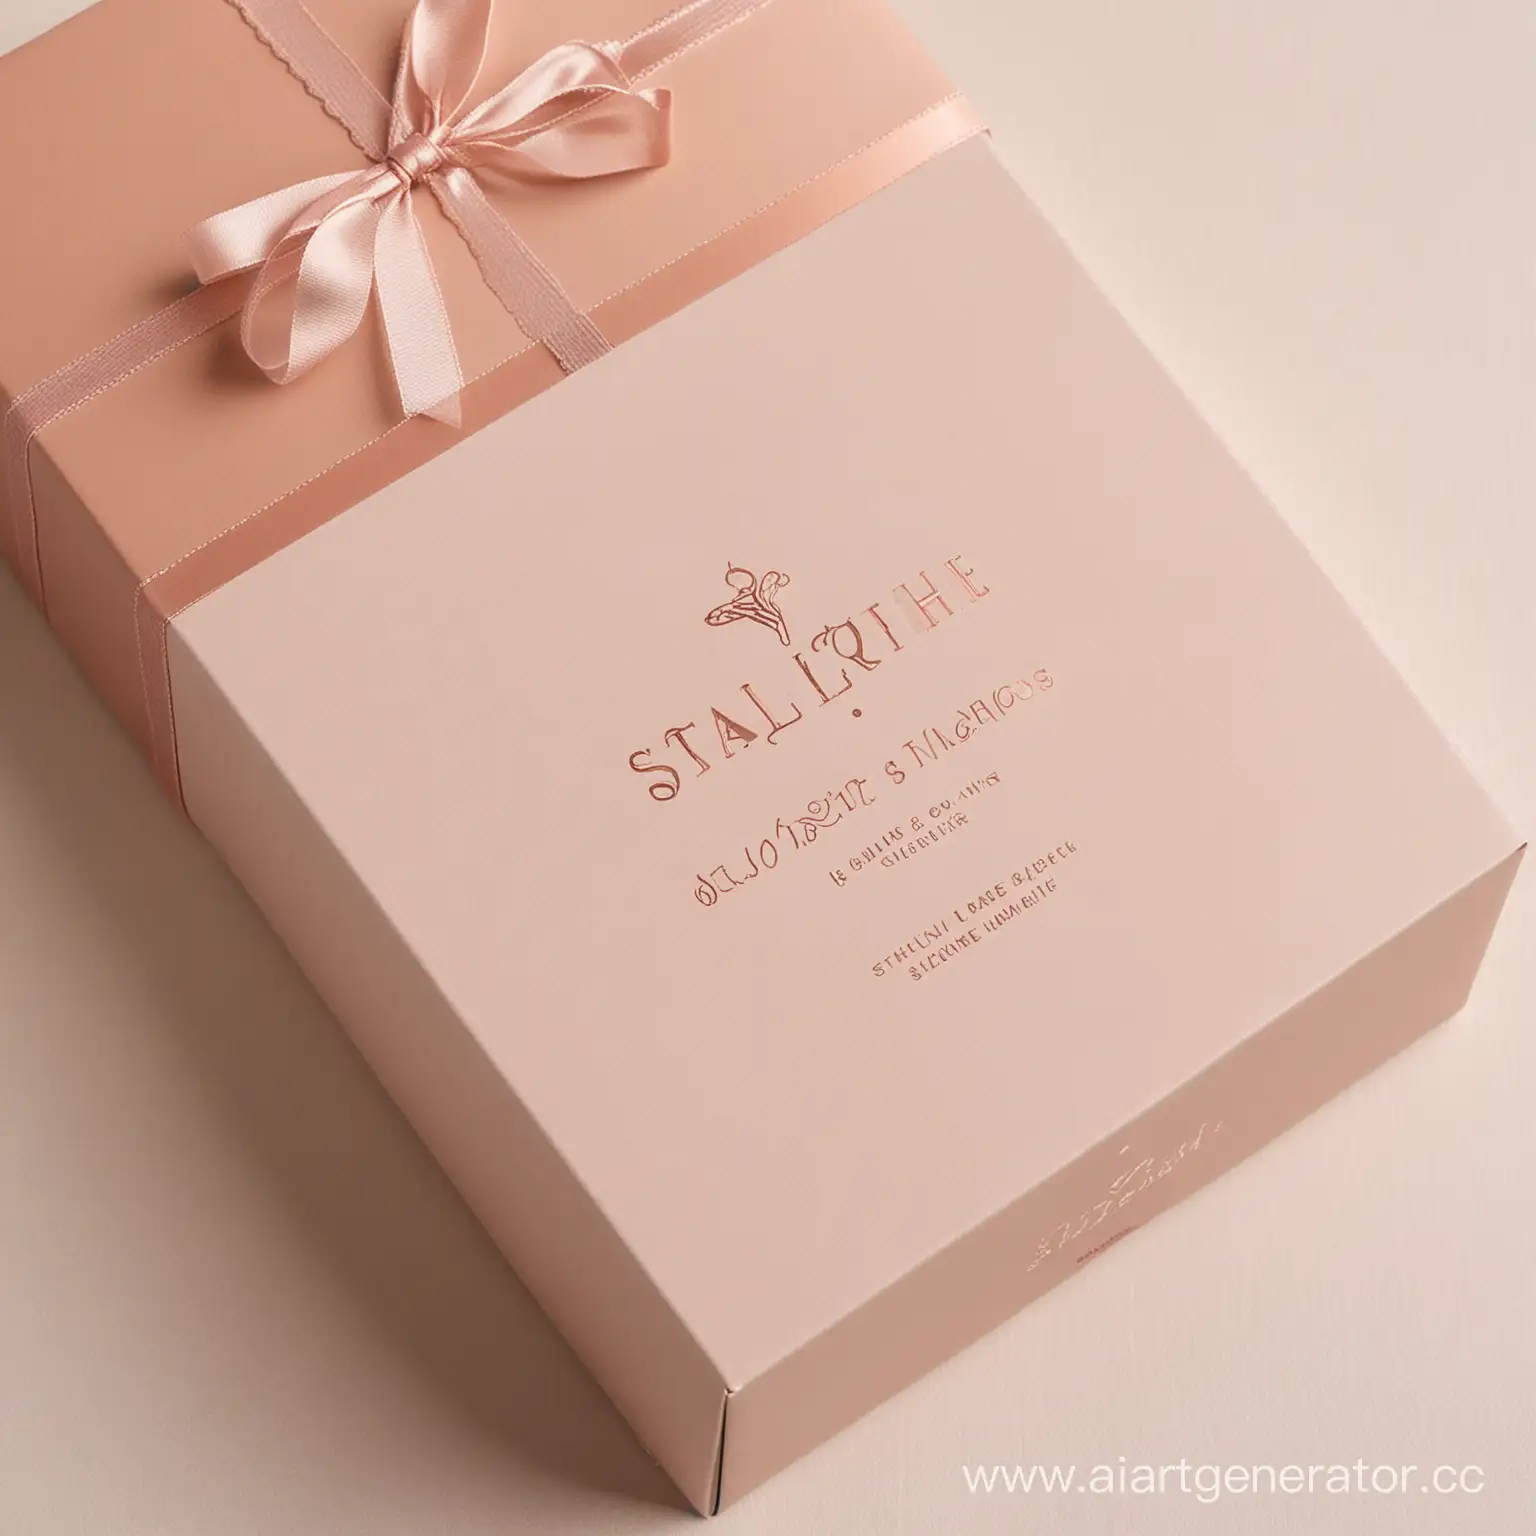 Дизайн упаковки нижнего женского белья в нежных оттенках. на упаковке логотип STALIYOSHI